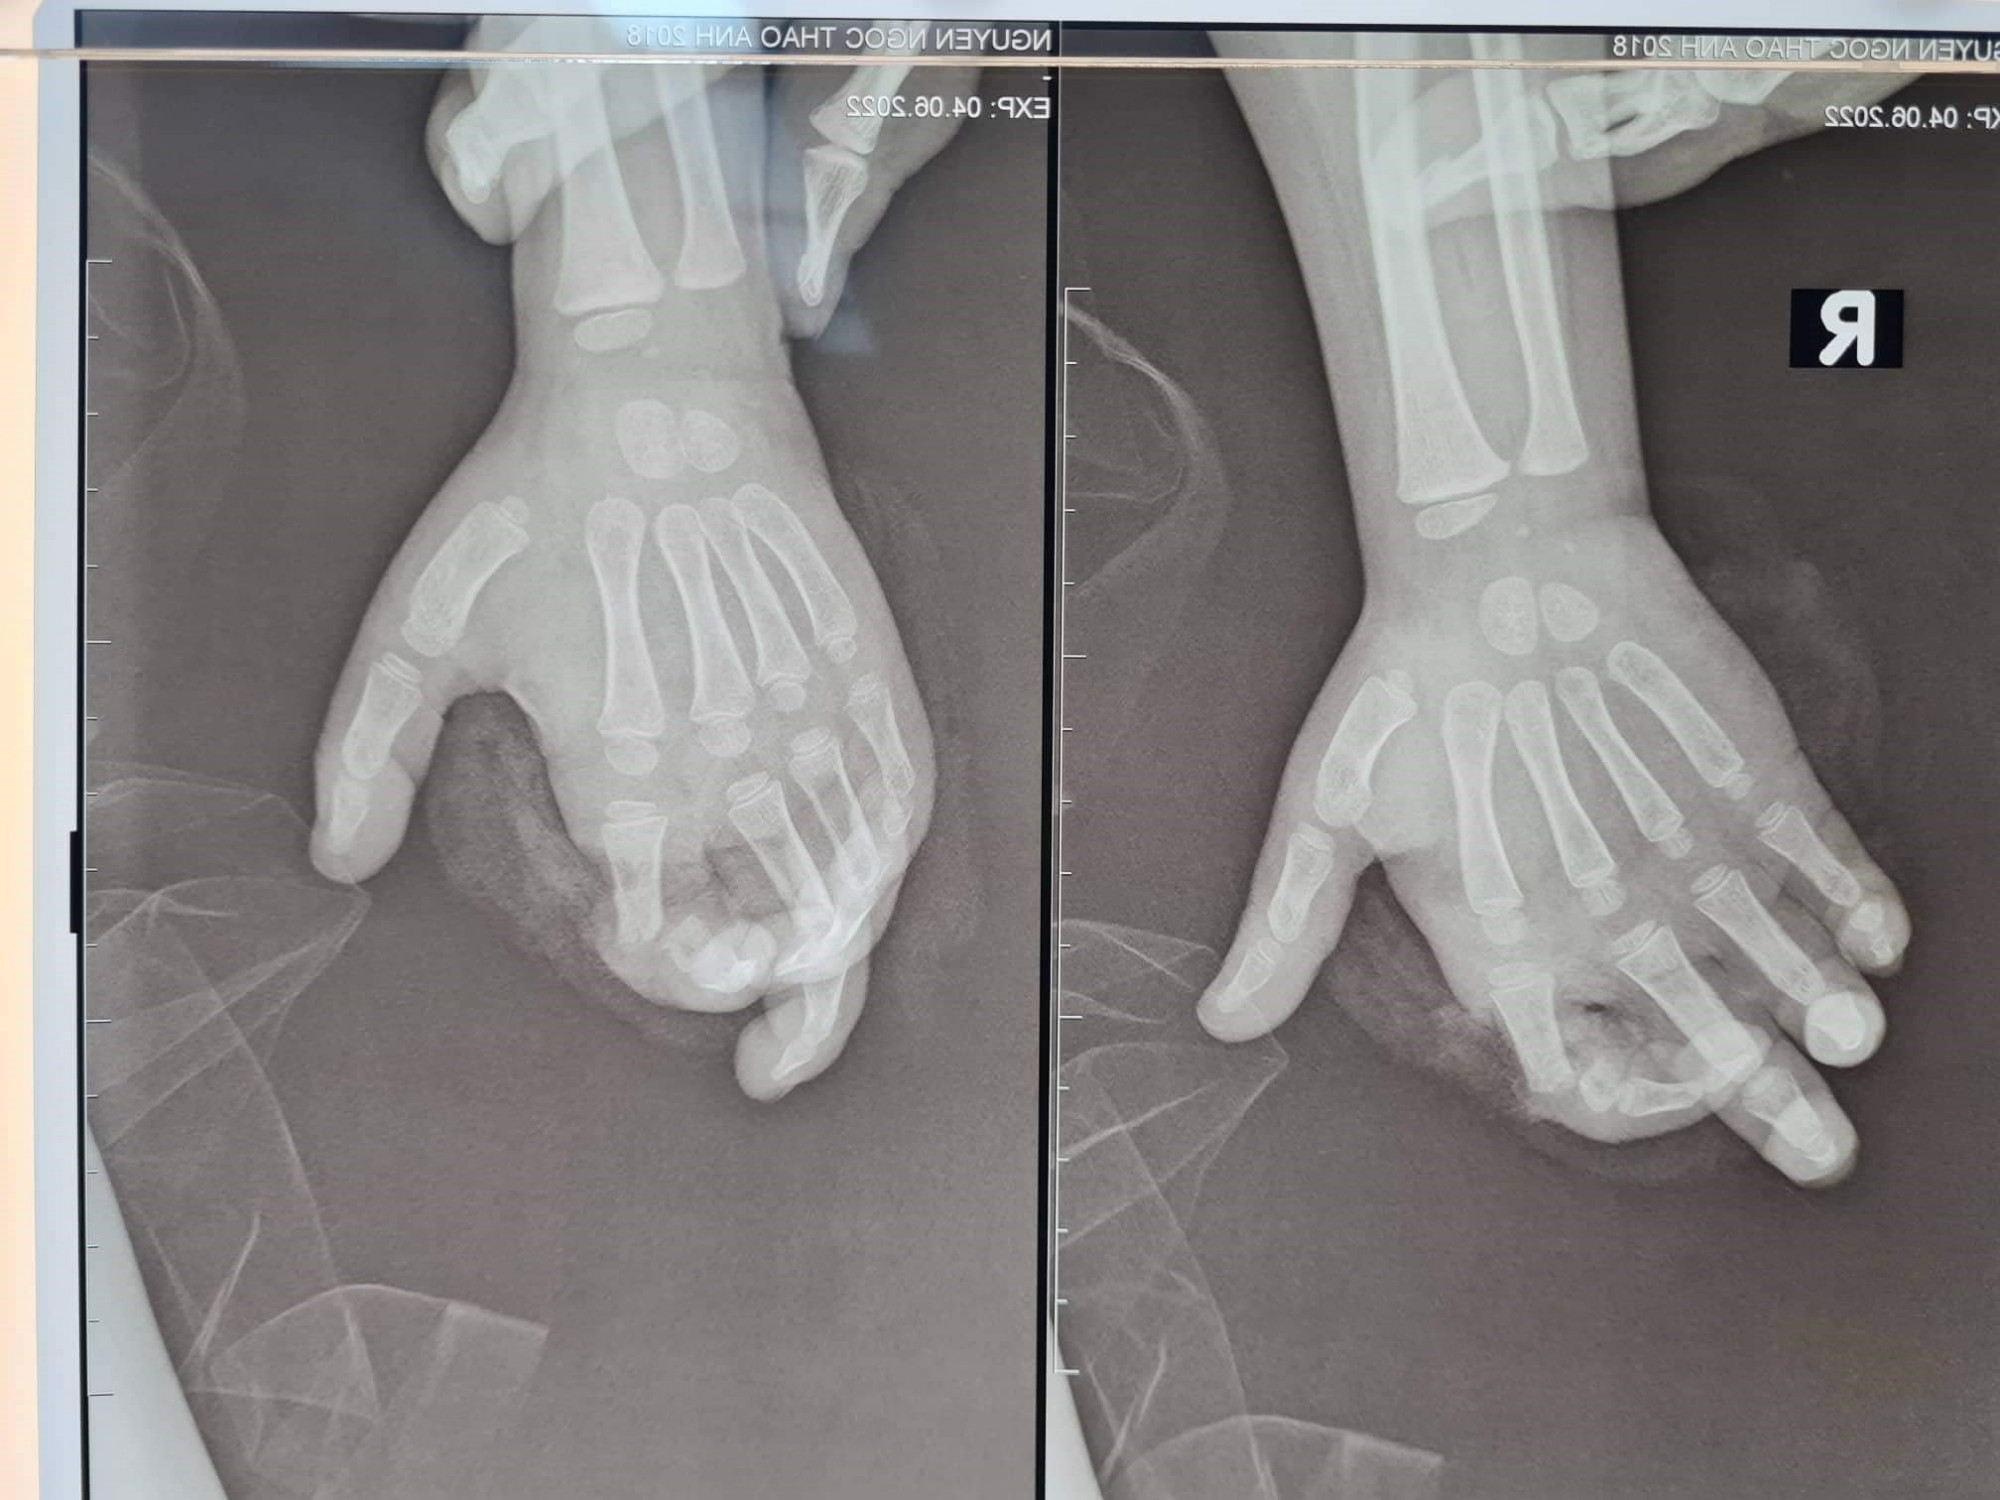 Hình ảnh ngón tay bị đứt của bé gái do nghịch máy xay khi đang hoạt động